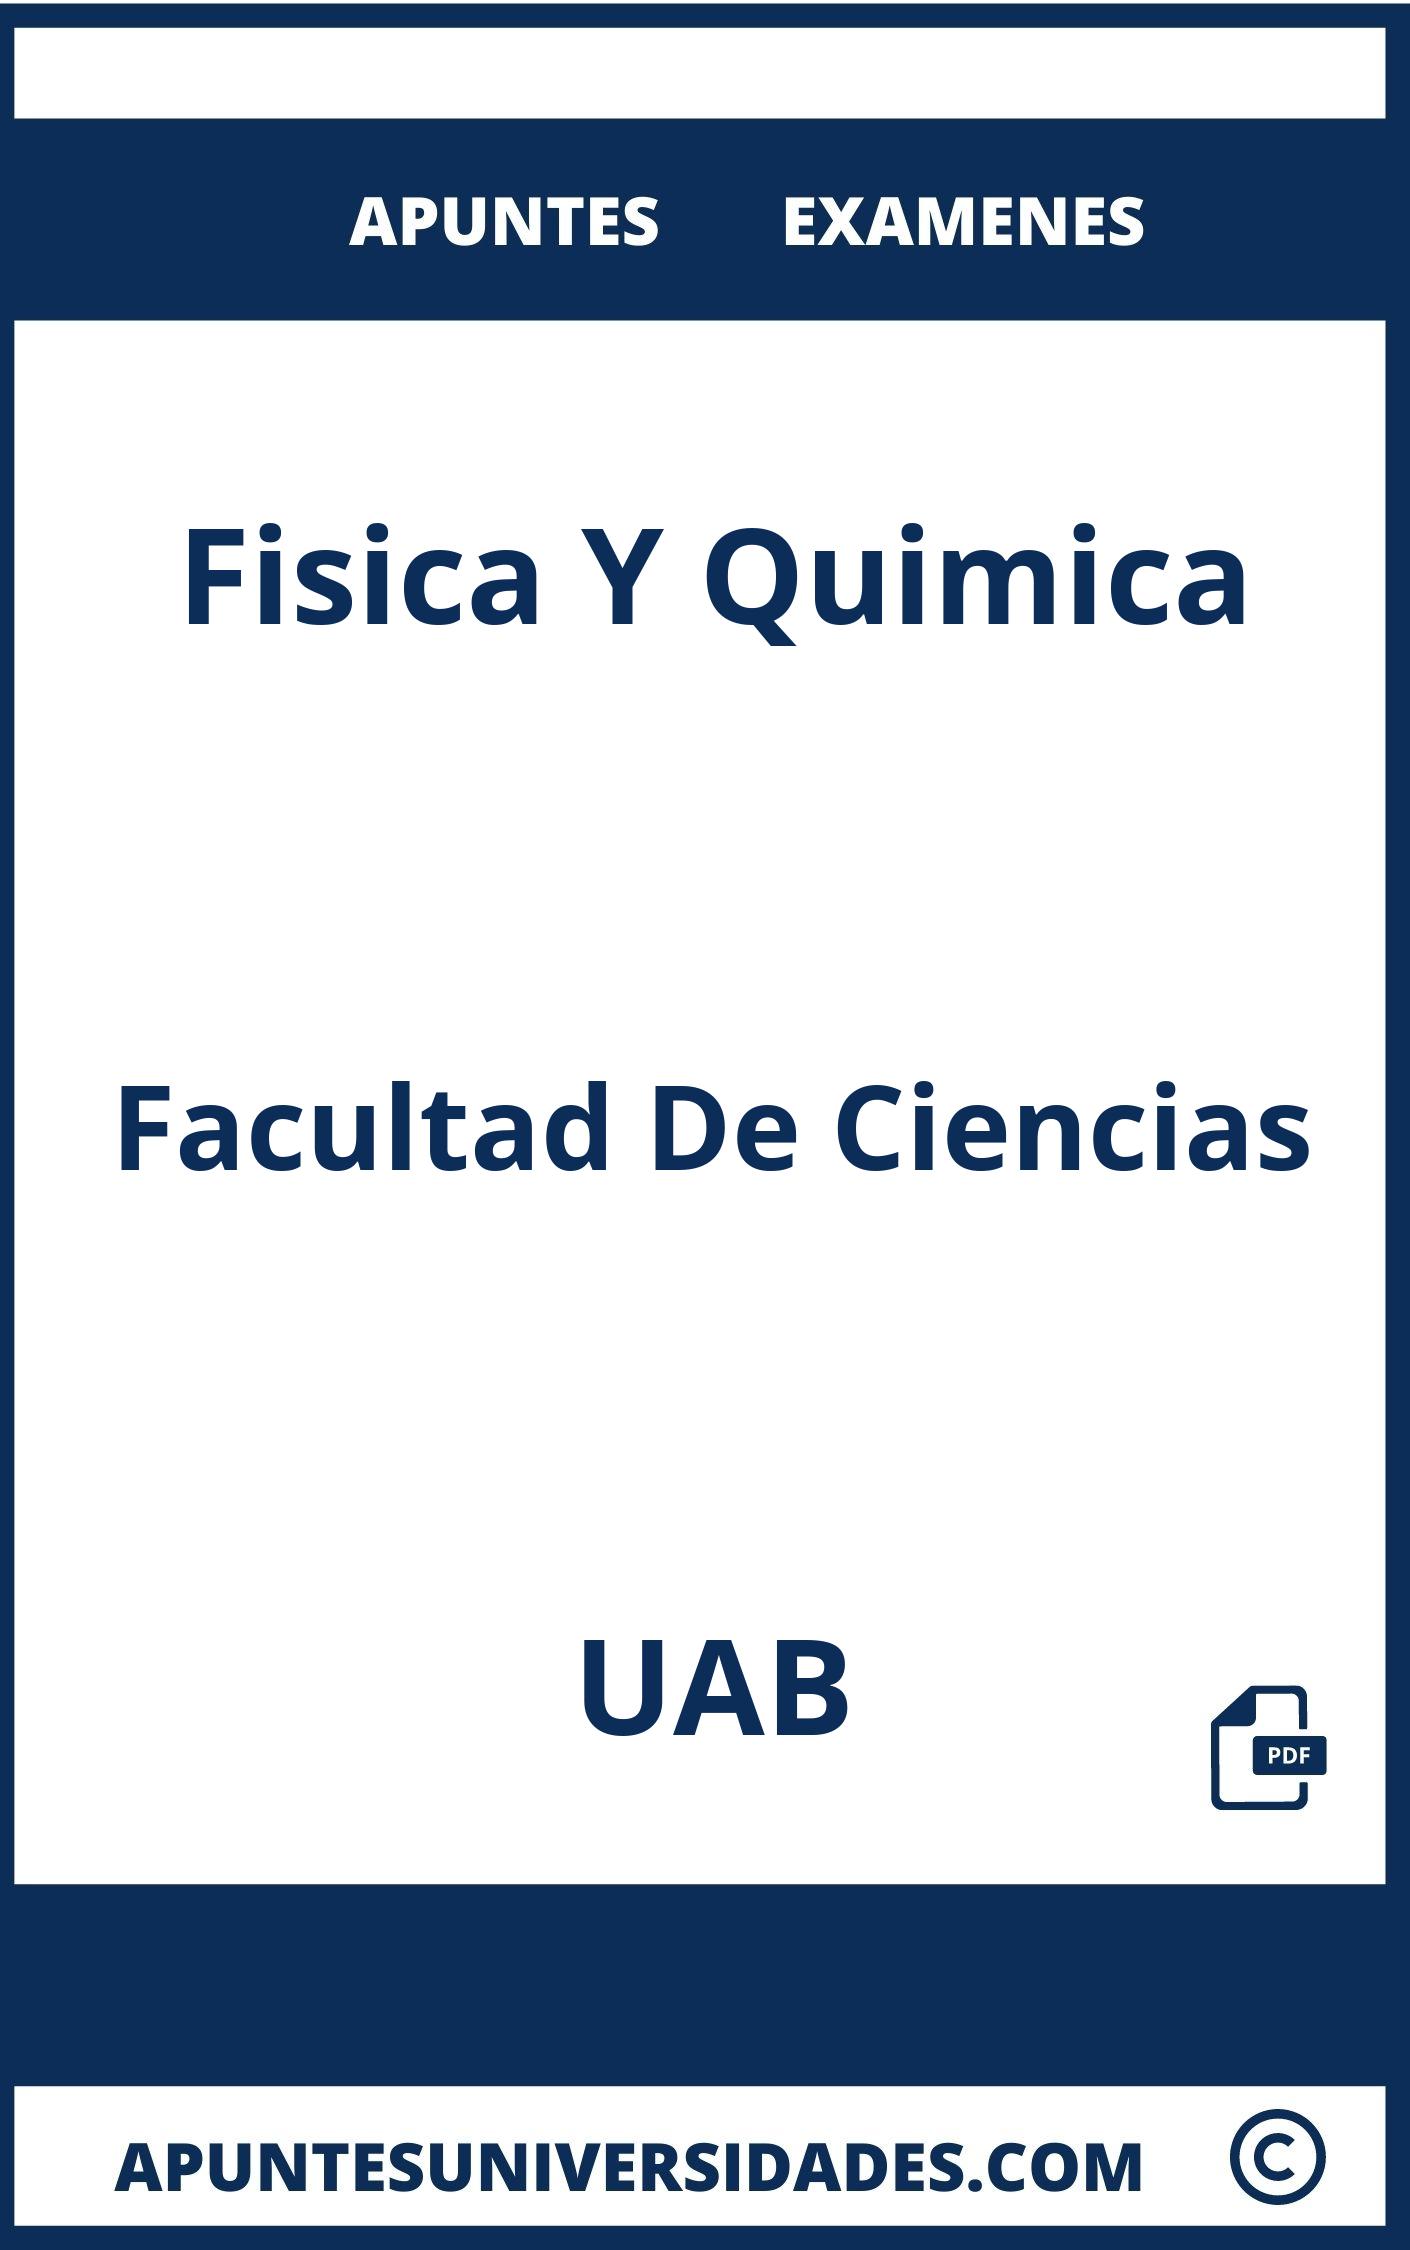 Apuntes y Examenes Fisica Y Quimica UAB